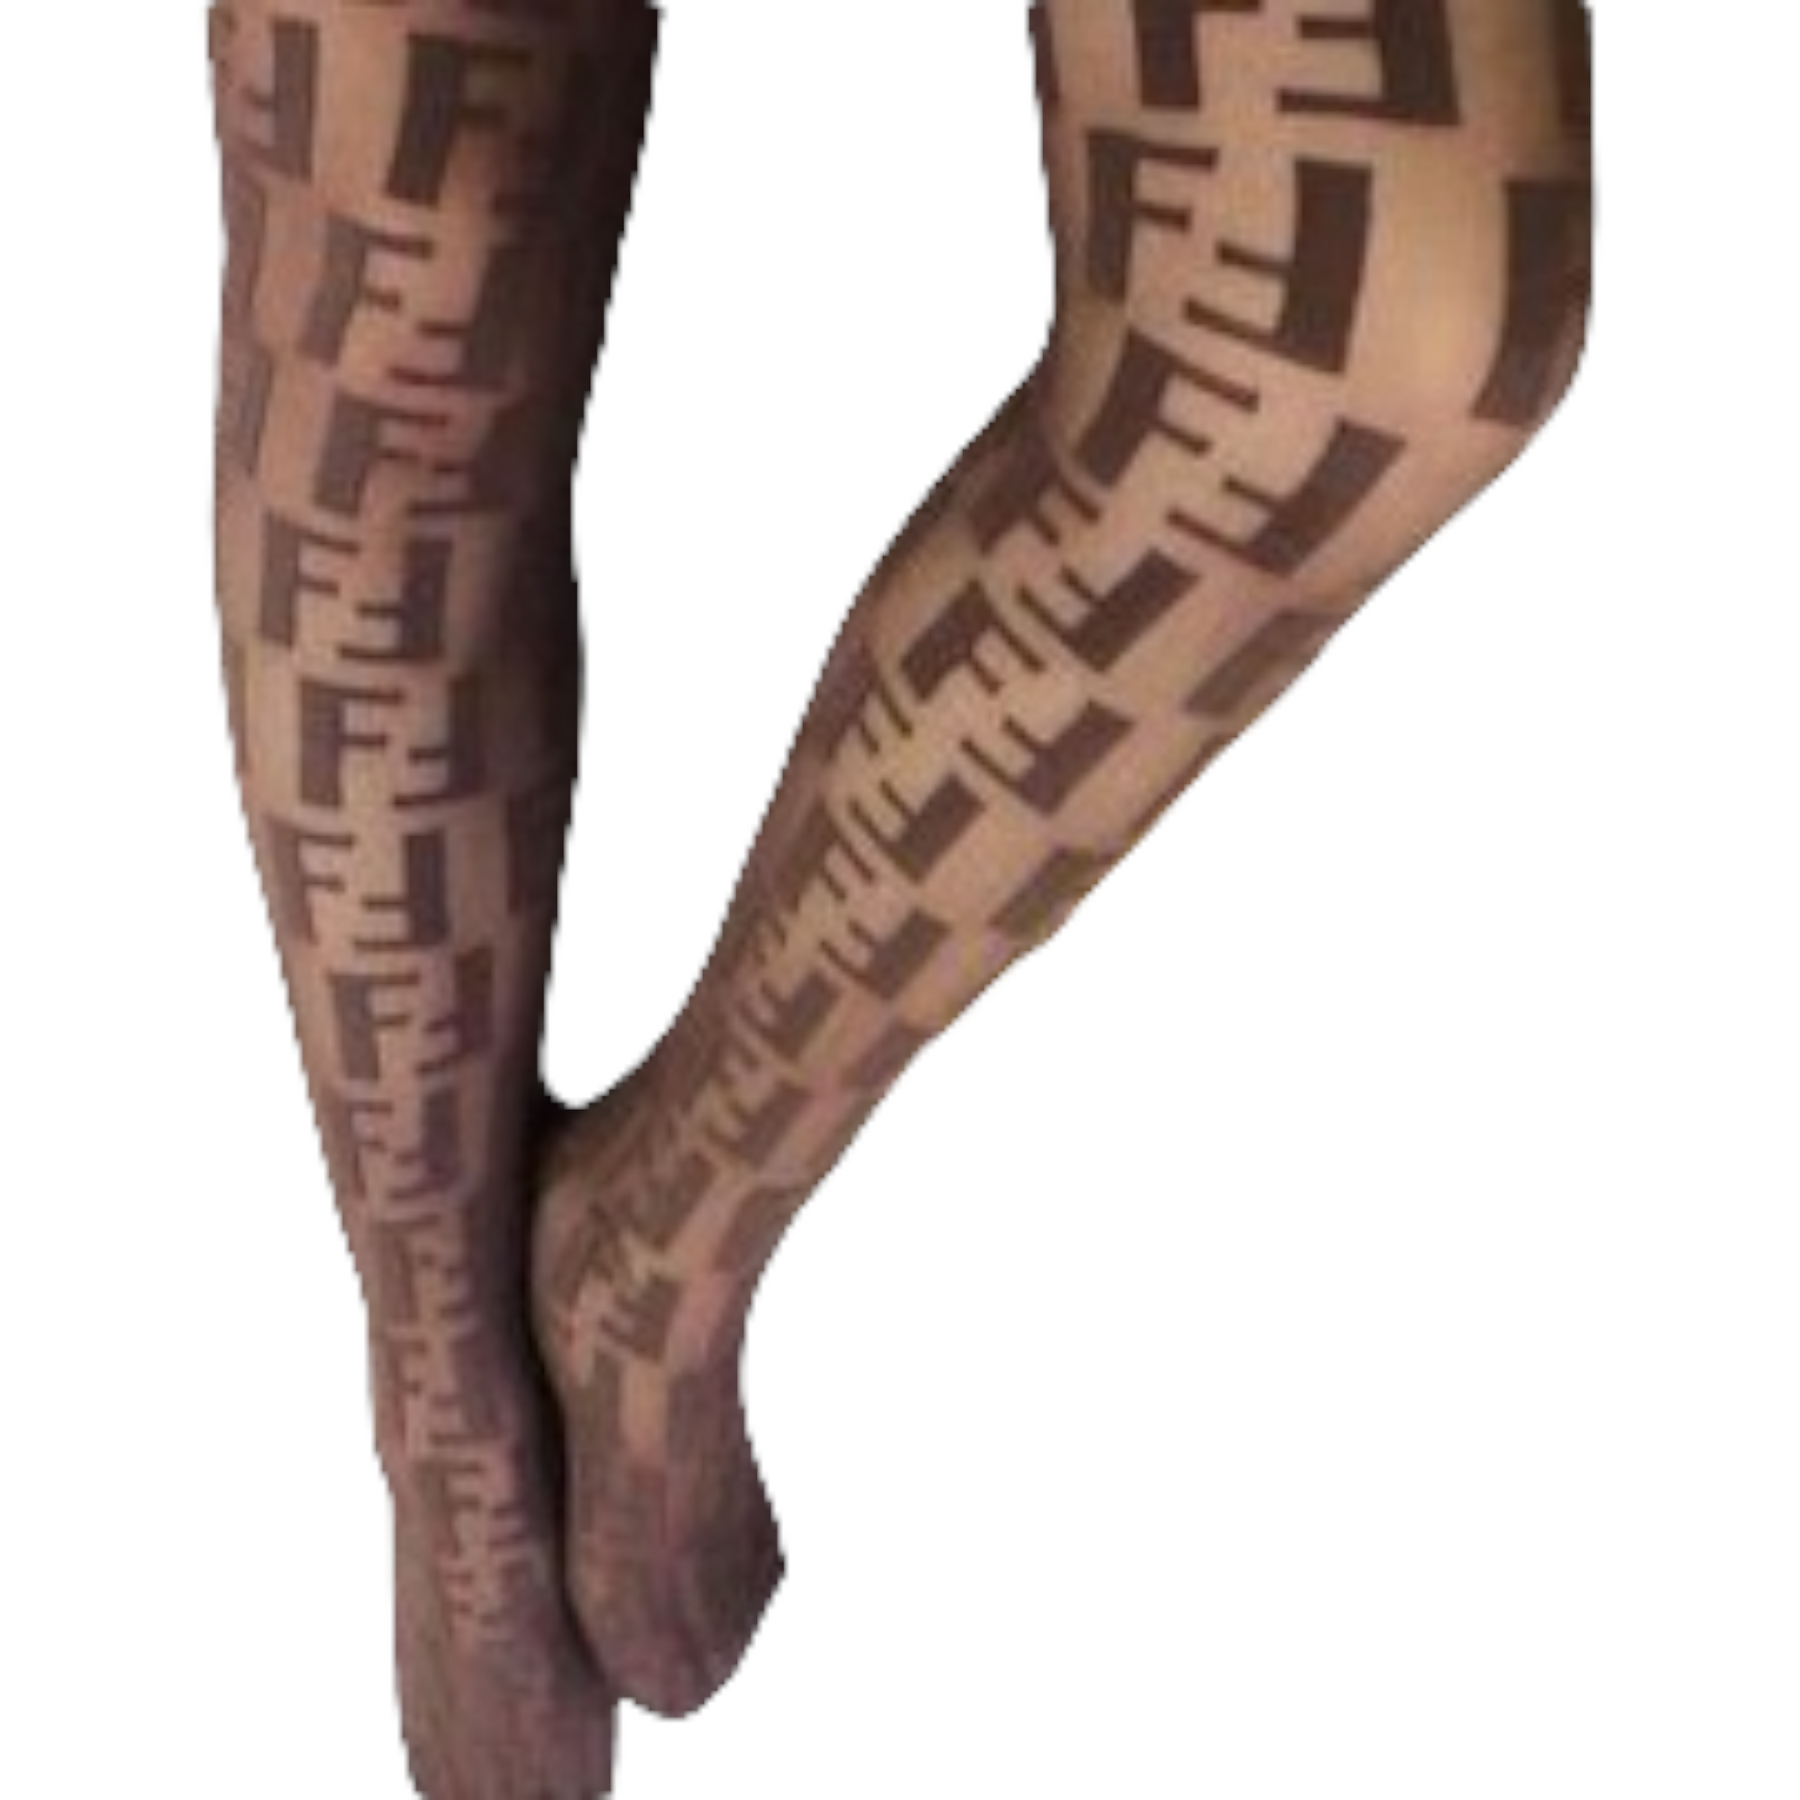 Fendi - Fendi FF motif tights stockings size medium on Designer Wardrobe